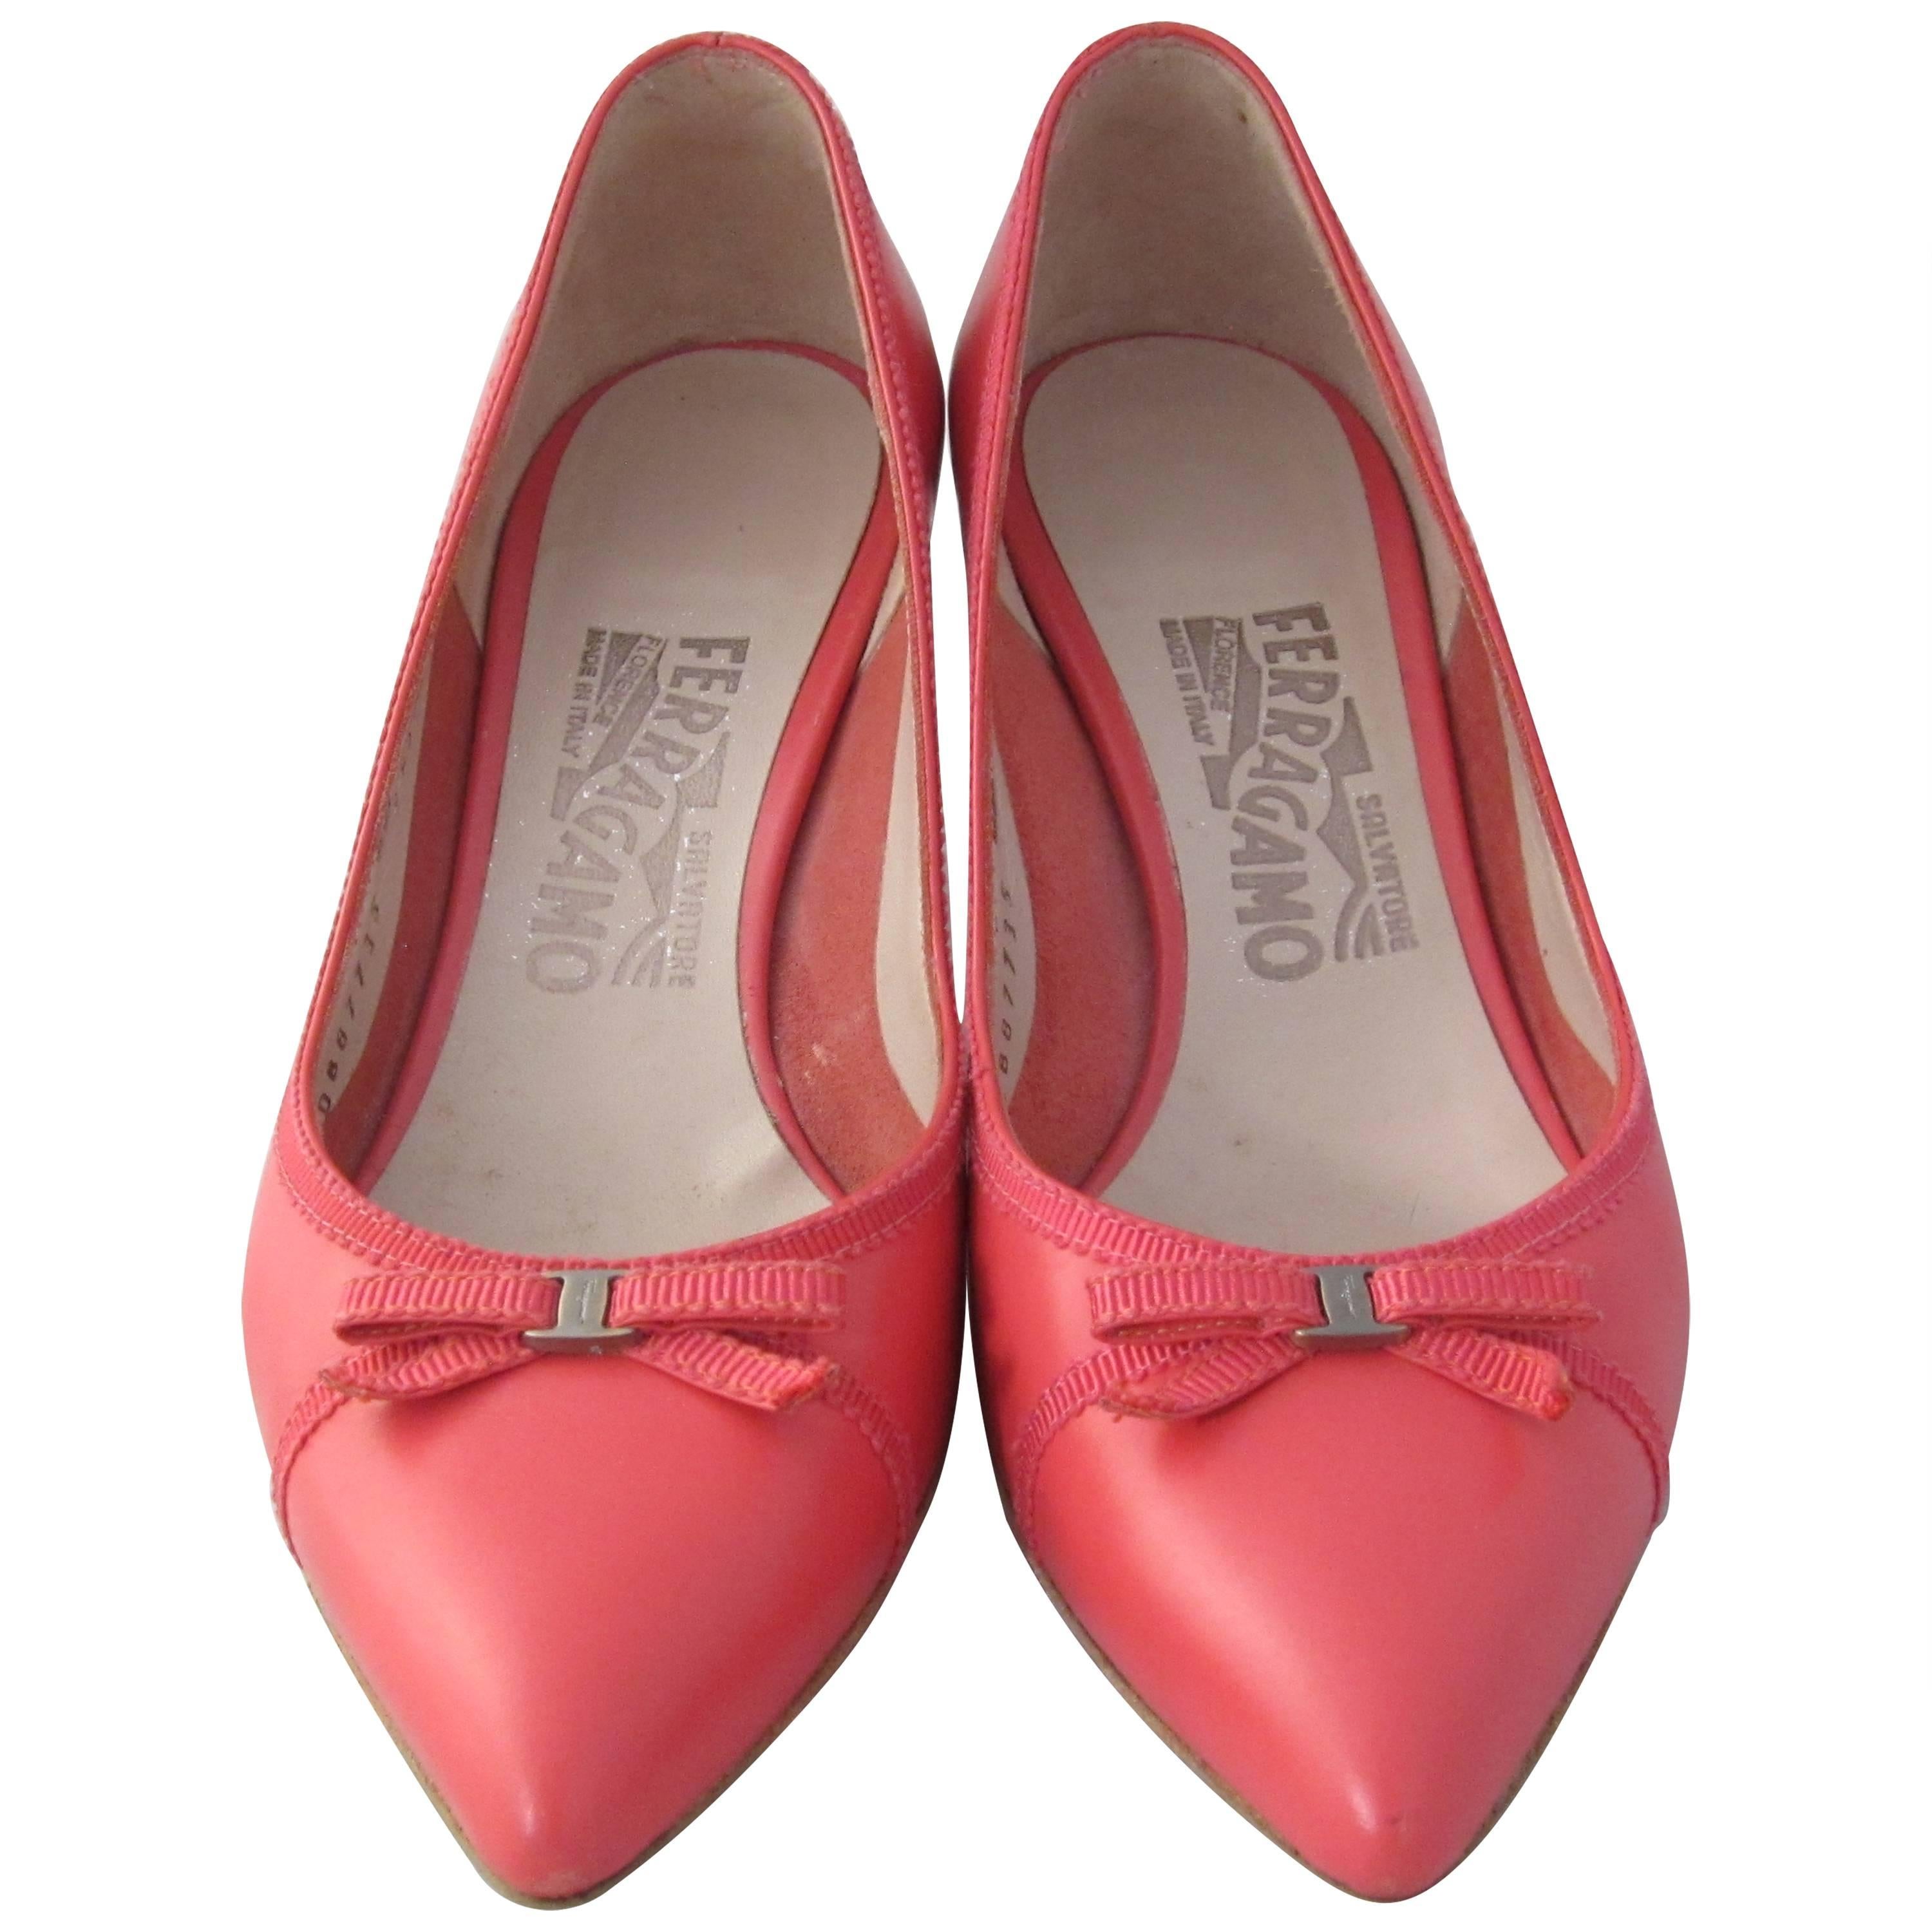 Salvatore Ferragamo Low Heel Pink Shoes Size 5.5